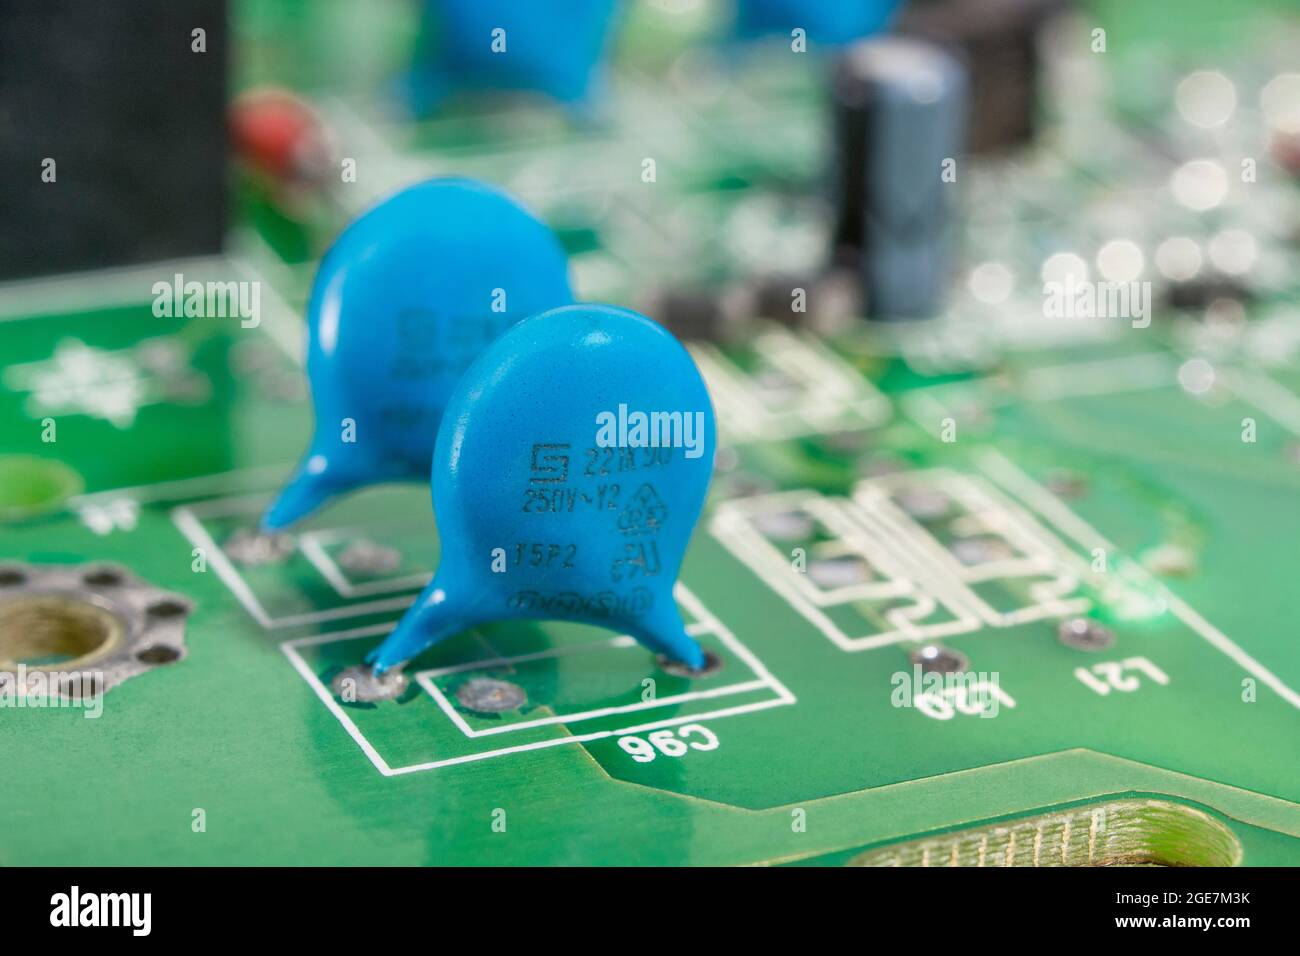 Gros plan des condensateurs à disque céramique de couleur bleue sur une carte de circuit imprimé verte. Pour condensateur au plomb, petits composants électroniques. Fabricant de condensateur inconnu. Banque D'Images